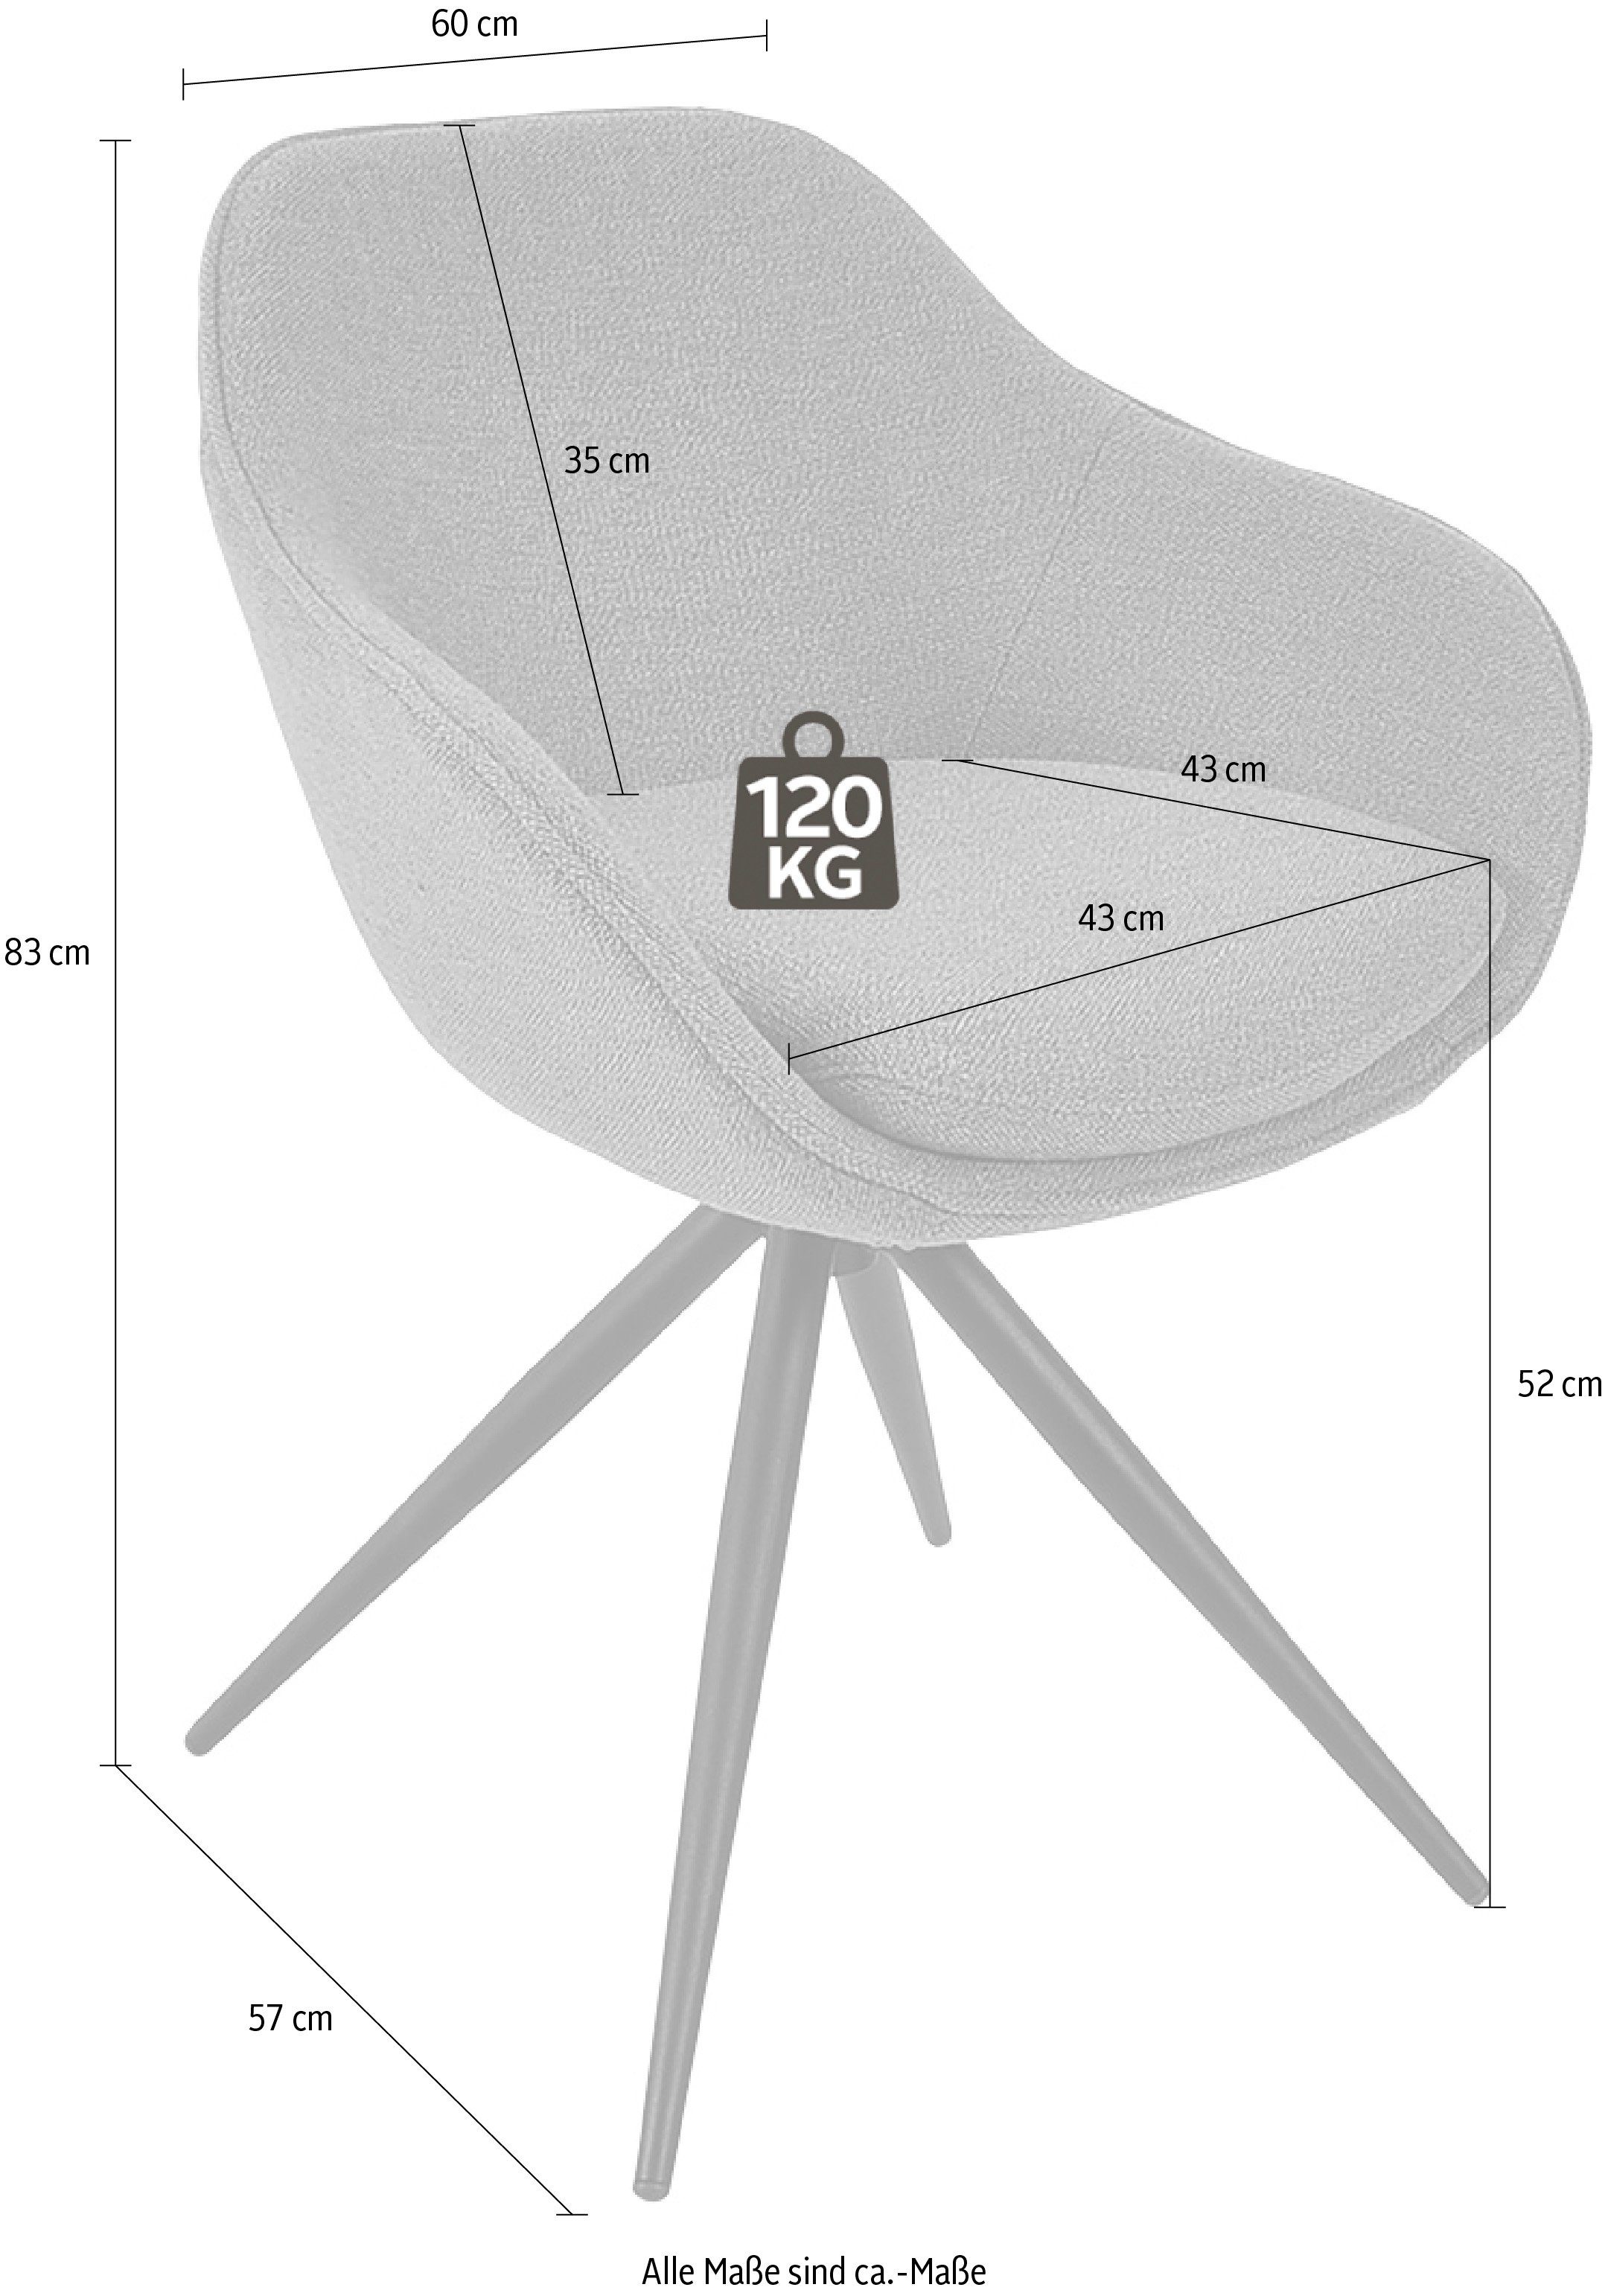 K+W Drehstuhl 4-Fuß Komfort ZOOM, & Wohnen Drehstuhl mit Struktur Gestell Metall aus schwarz